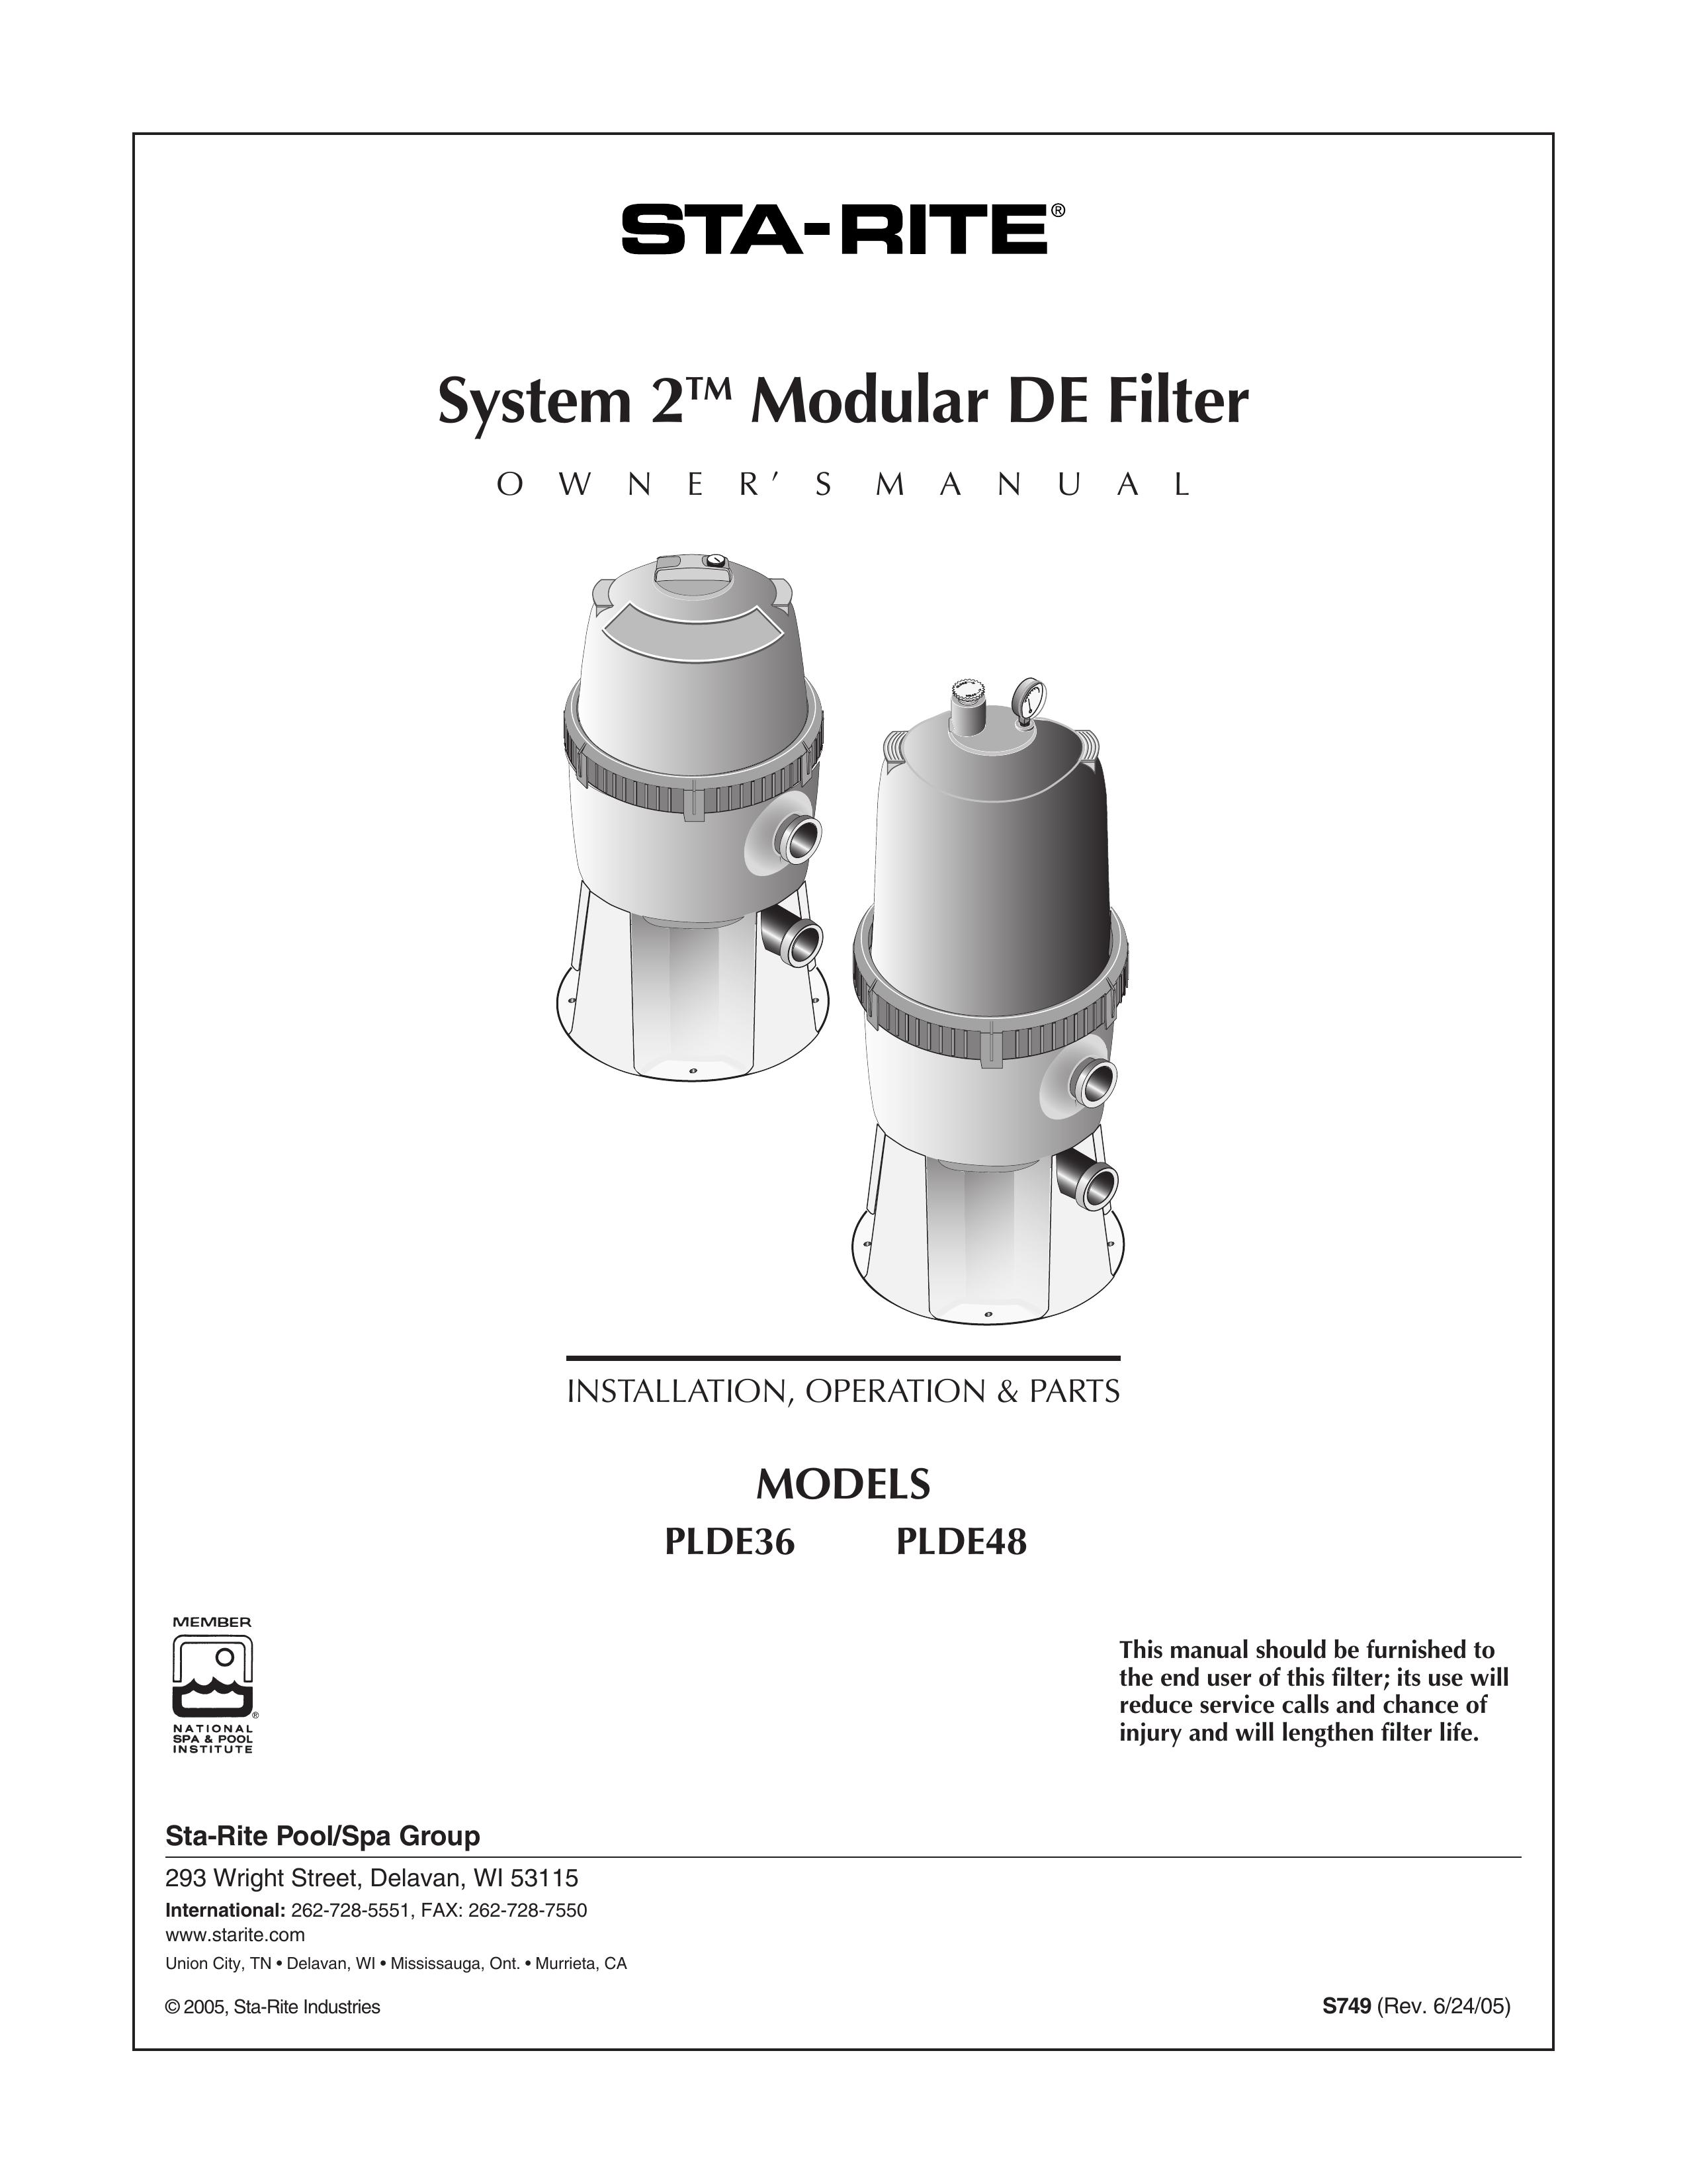 Pentair PLDE48 Water Dispenser User Manual